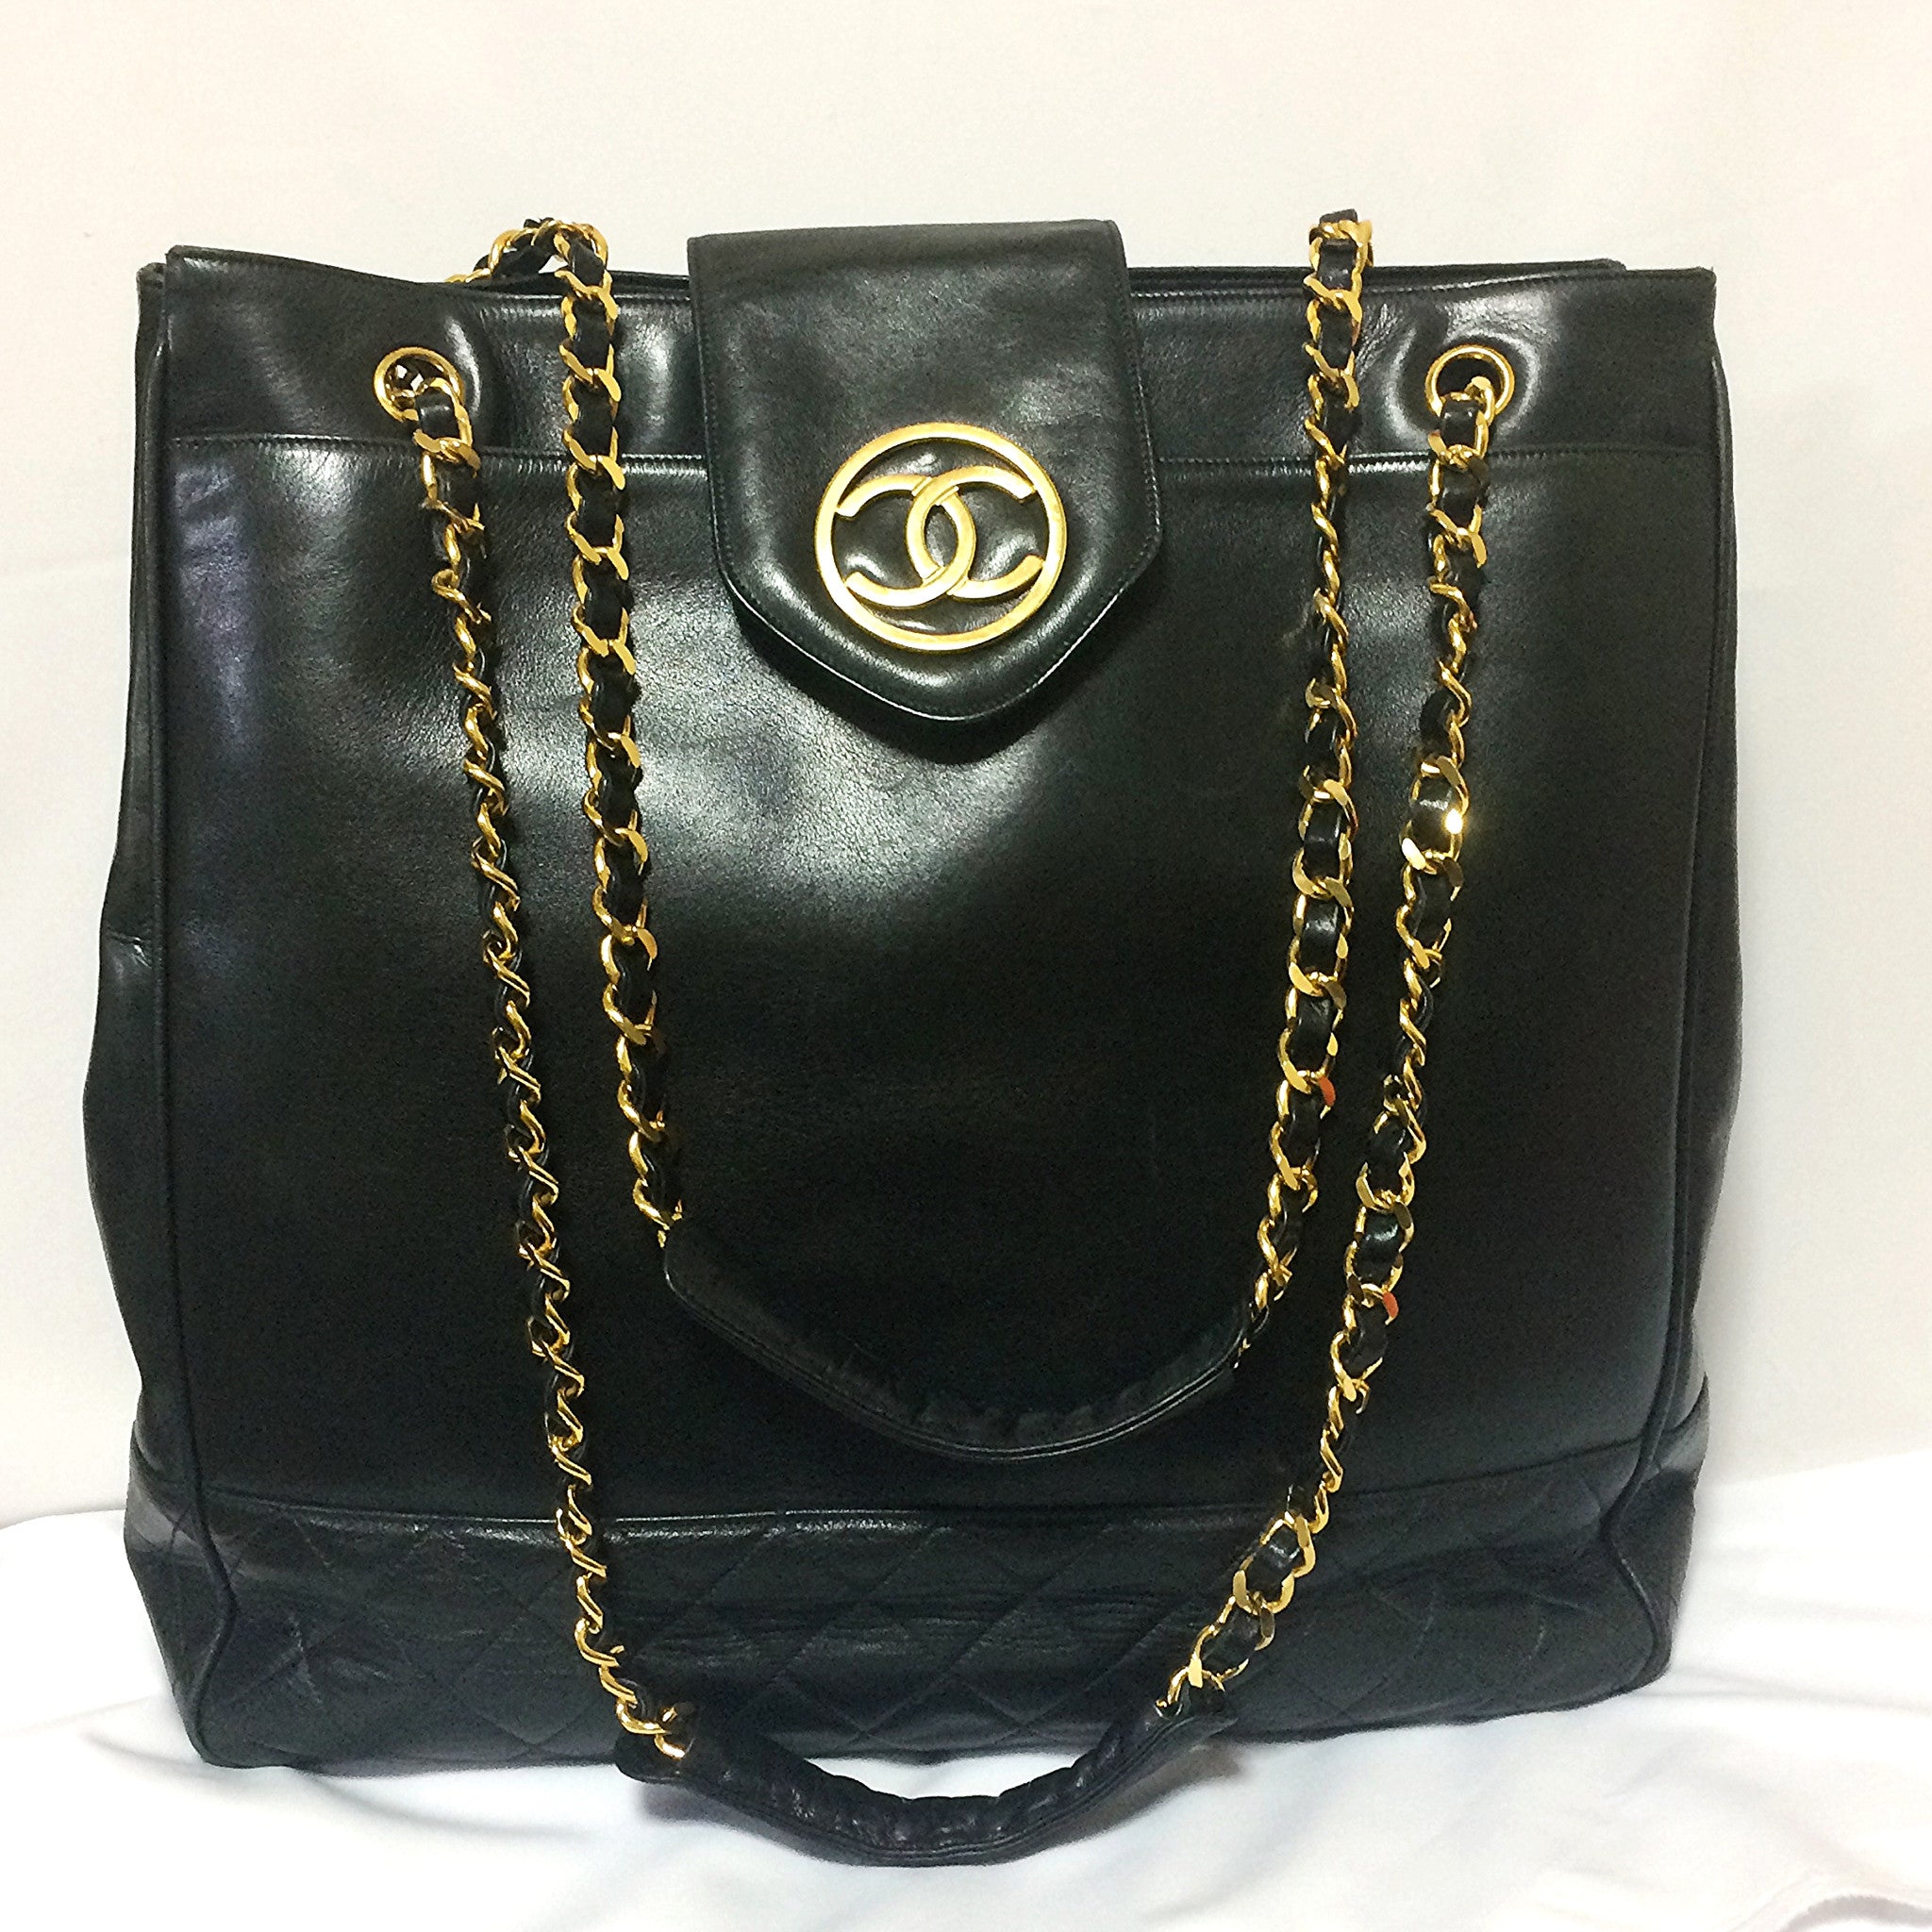 Chanel Vintage Tote Shoulder Bag - 54 For Sale on 1stDibs